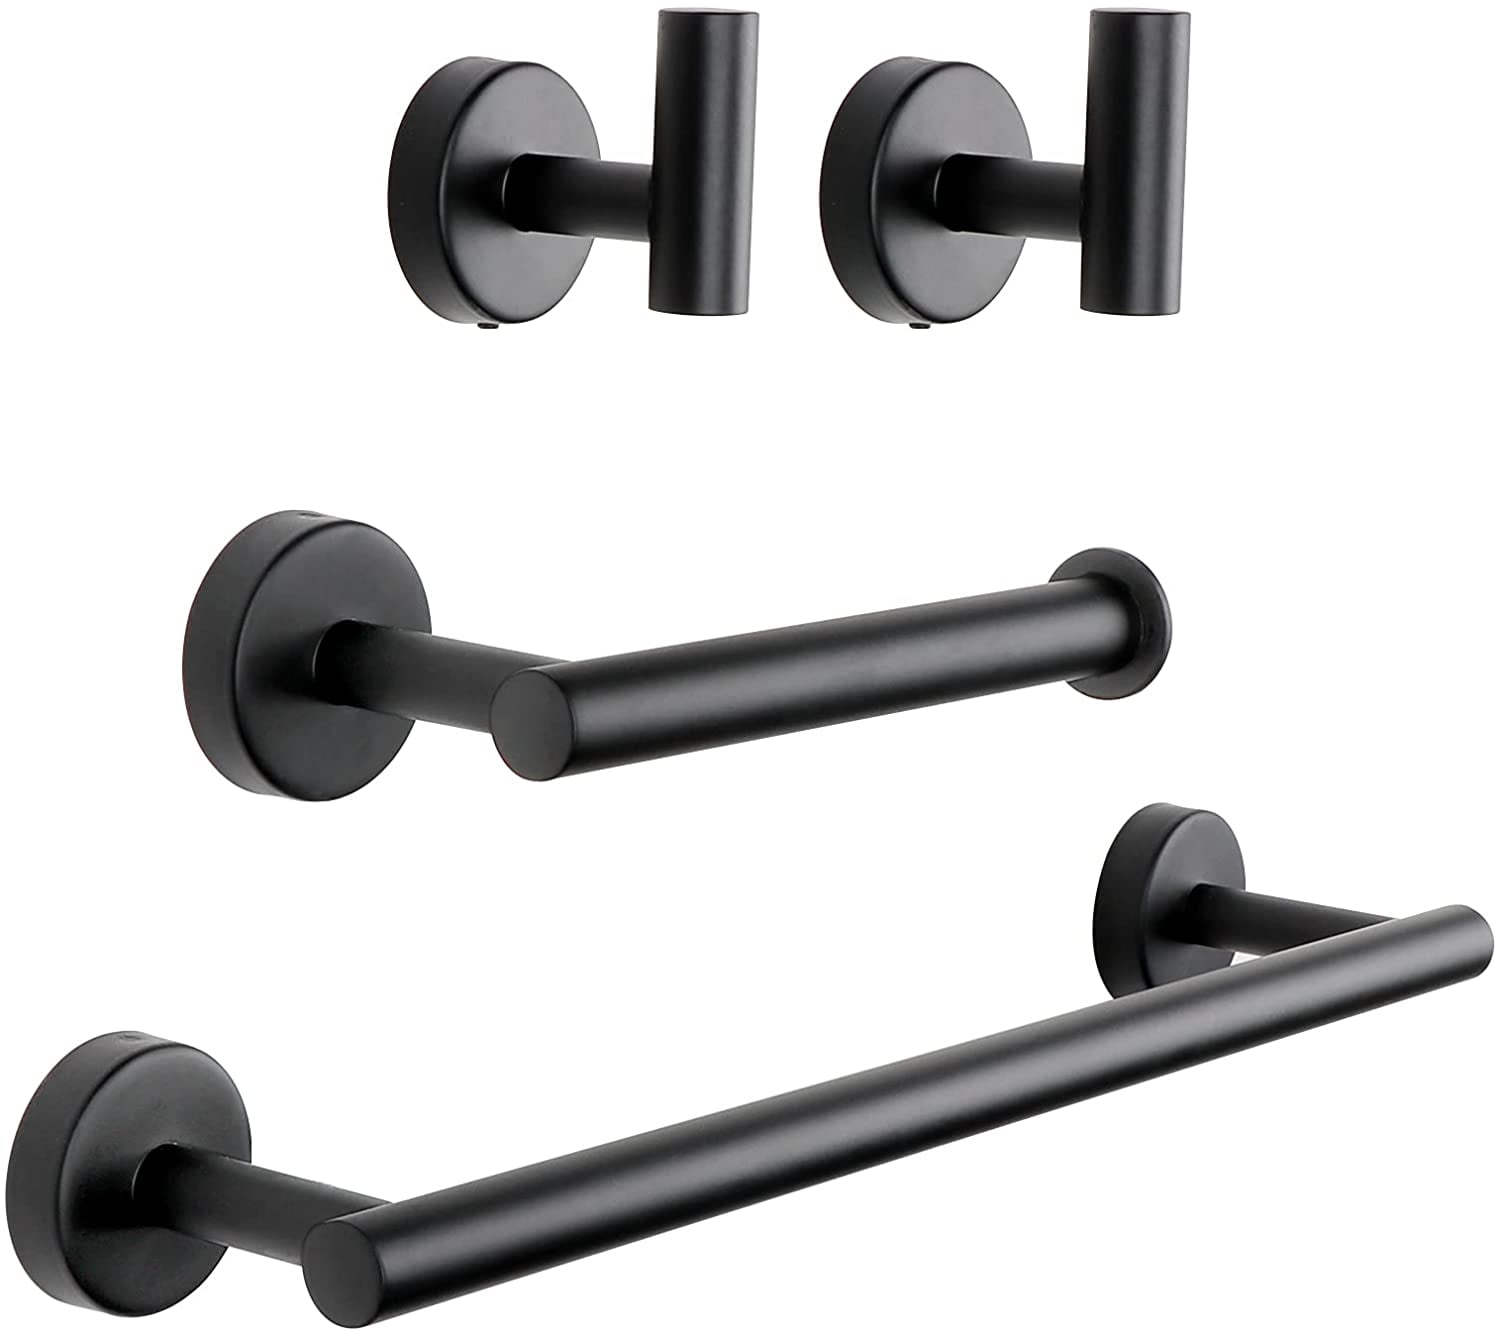 Details about   Polished Chrome 4-PCS Bathroom Hardware Set Accessory Towel Bar Ring Hook Holder 